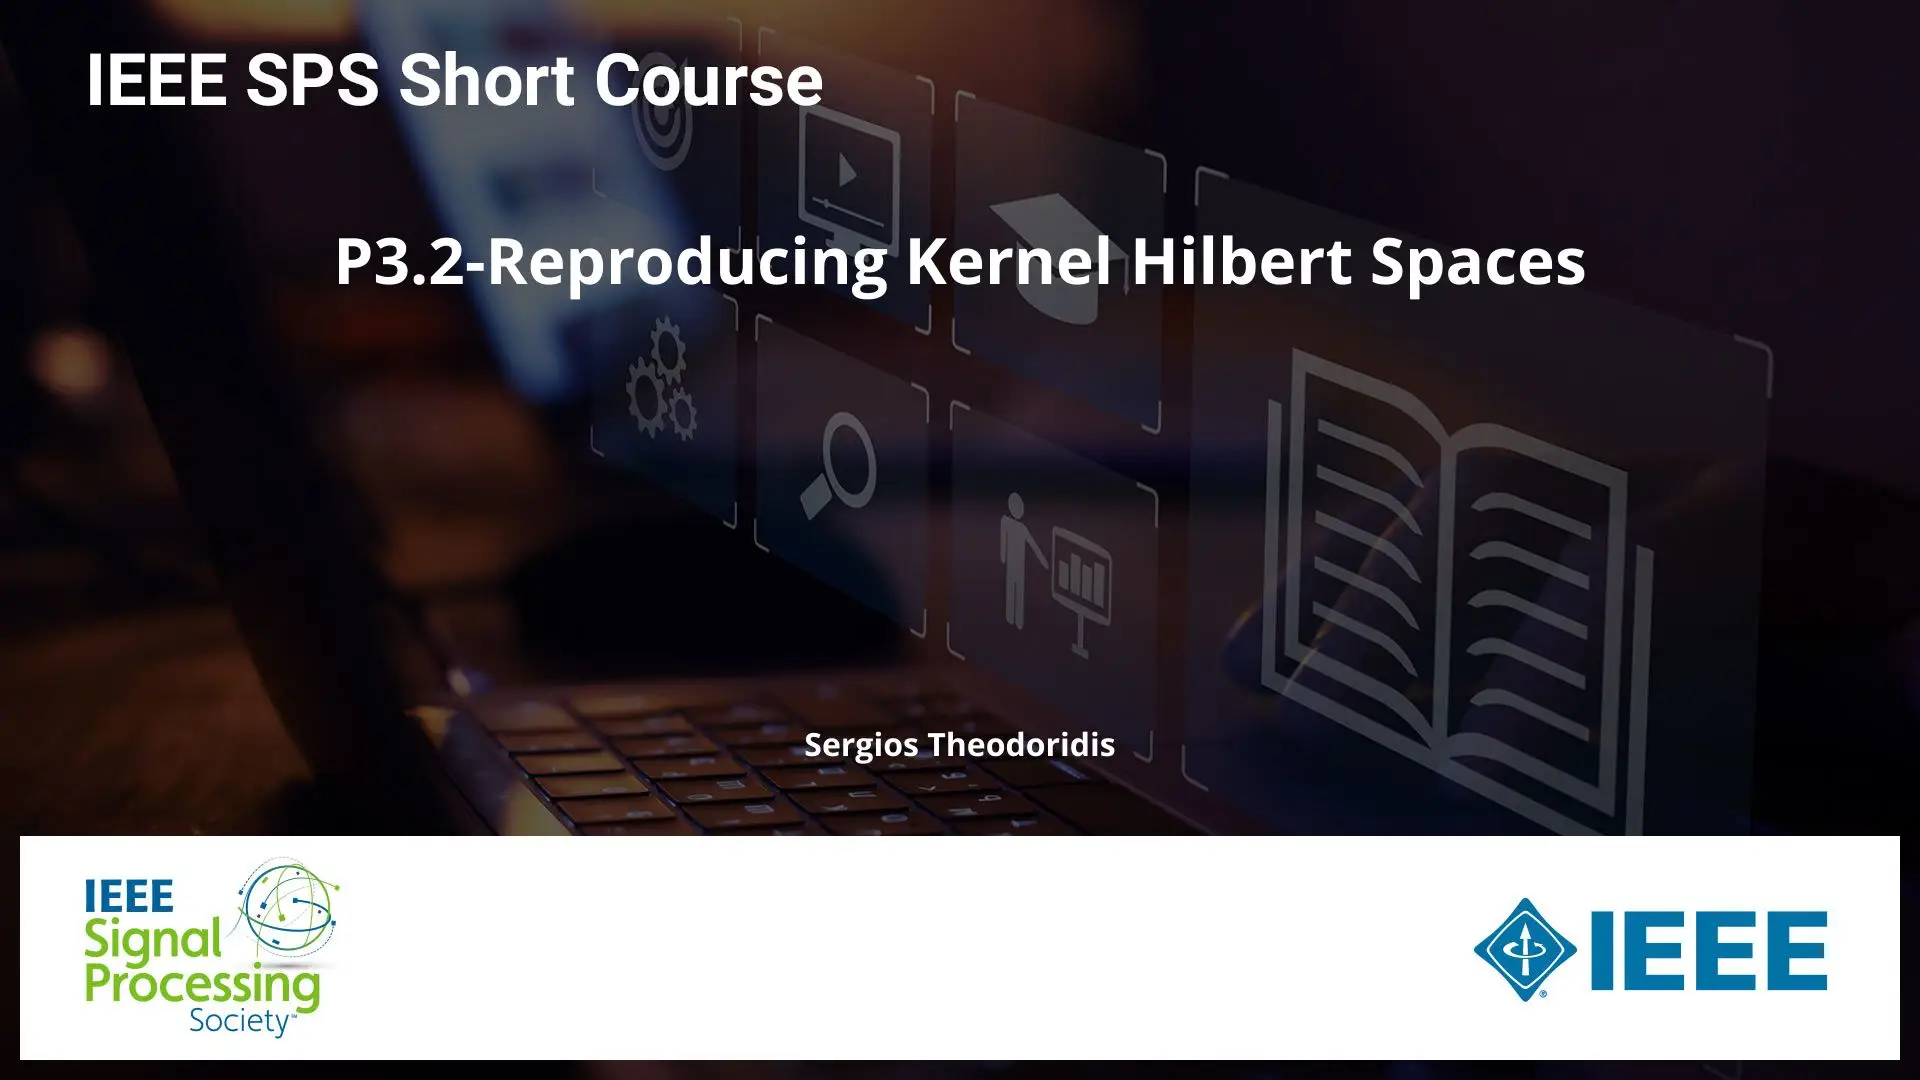 P3.2-Reproducing Kernel Hilbert Spaces